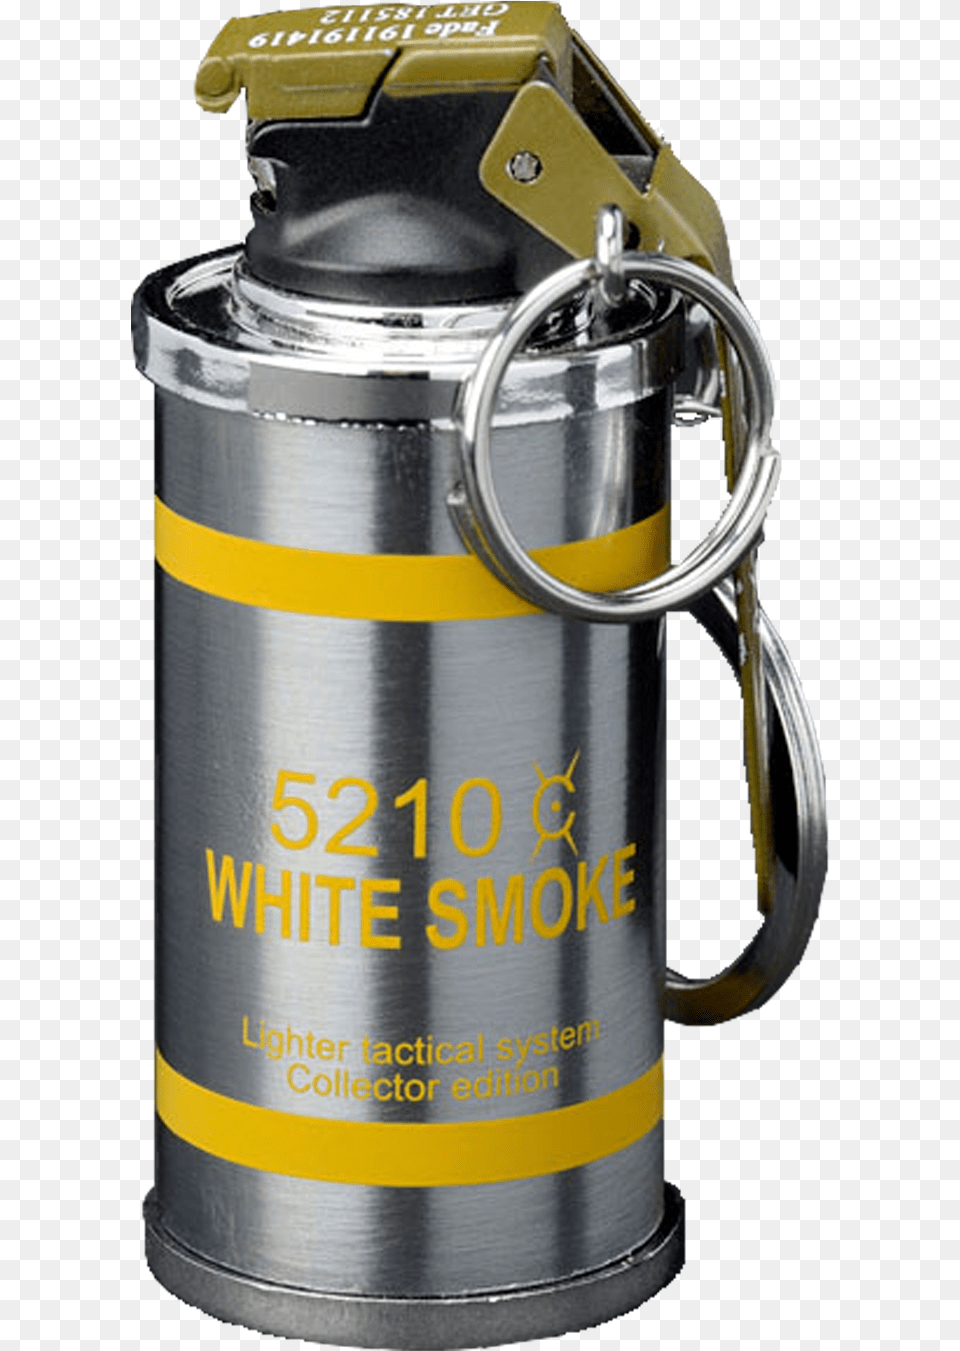 Keychain Smoke Grenade Lighter Lighter, Ammunition, Weapon, Bottle, Shaker Free Transparent Png